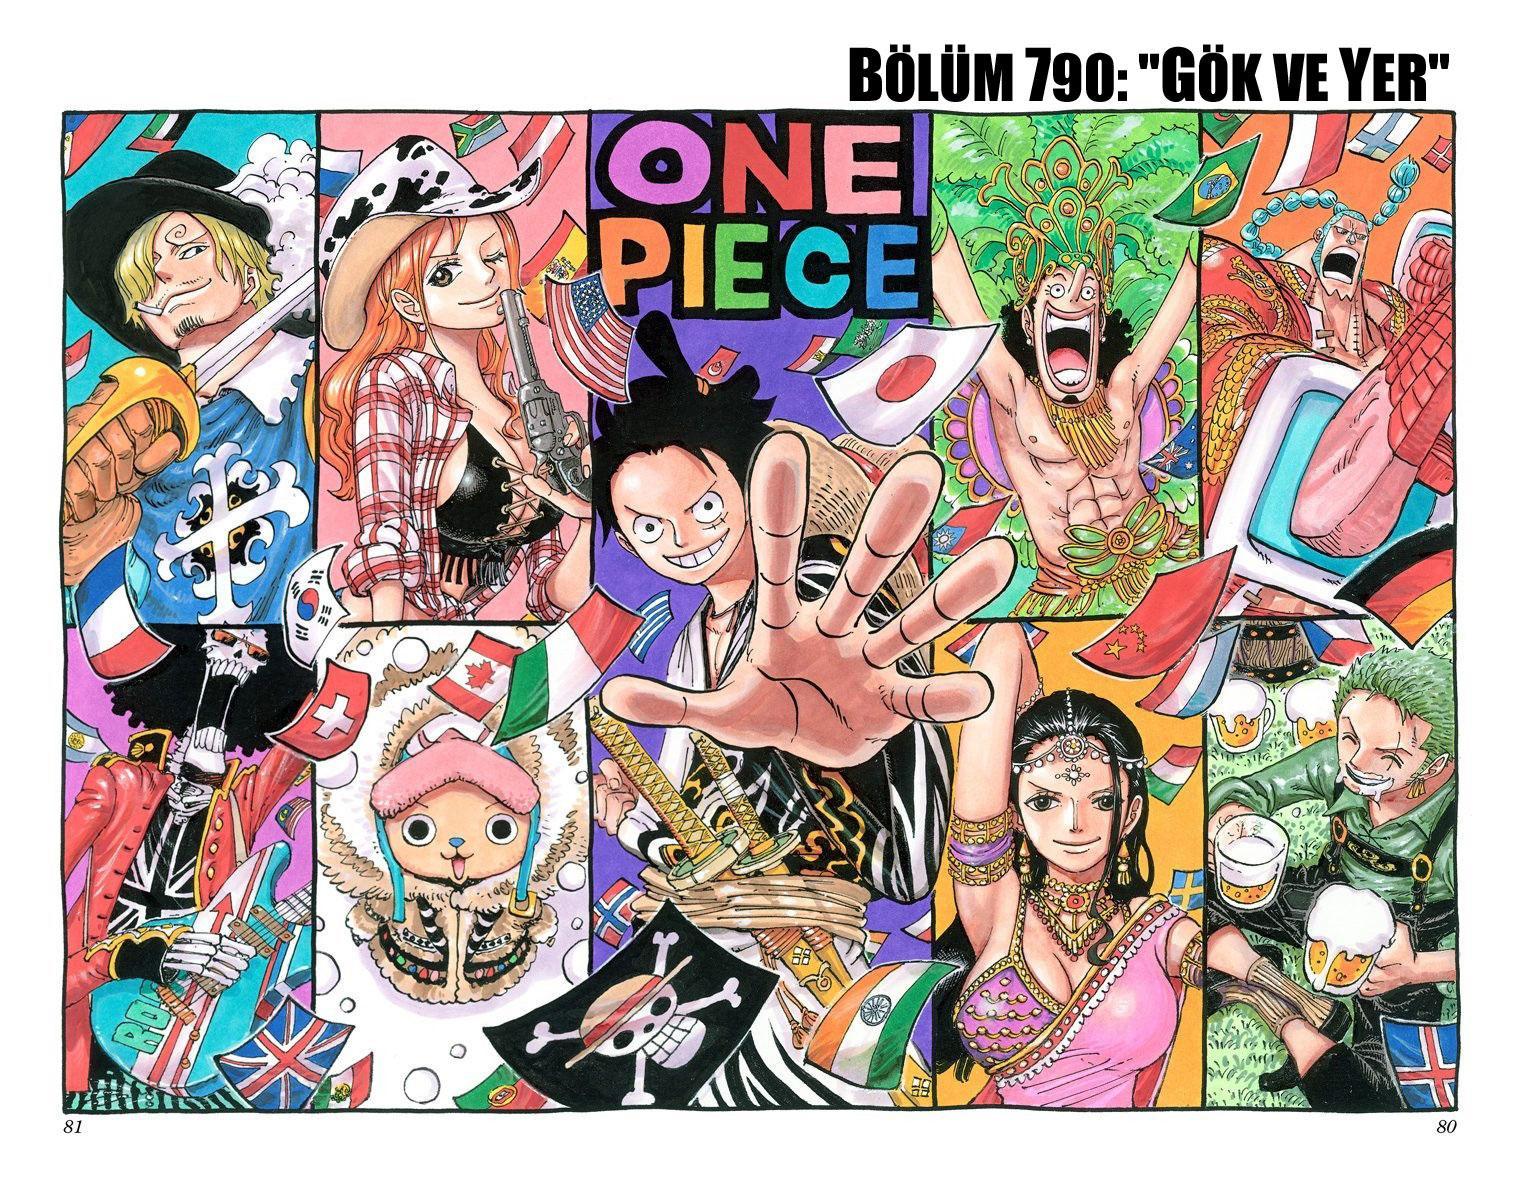 One Piece [Renkli] mangasının 790 bölümünün 2. sayfasını okuyorsunuz.